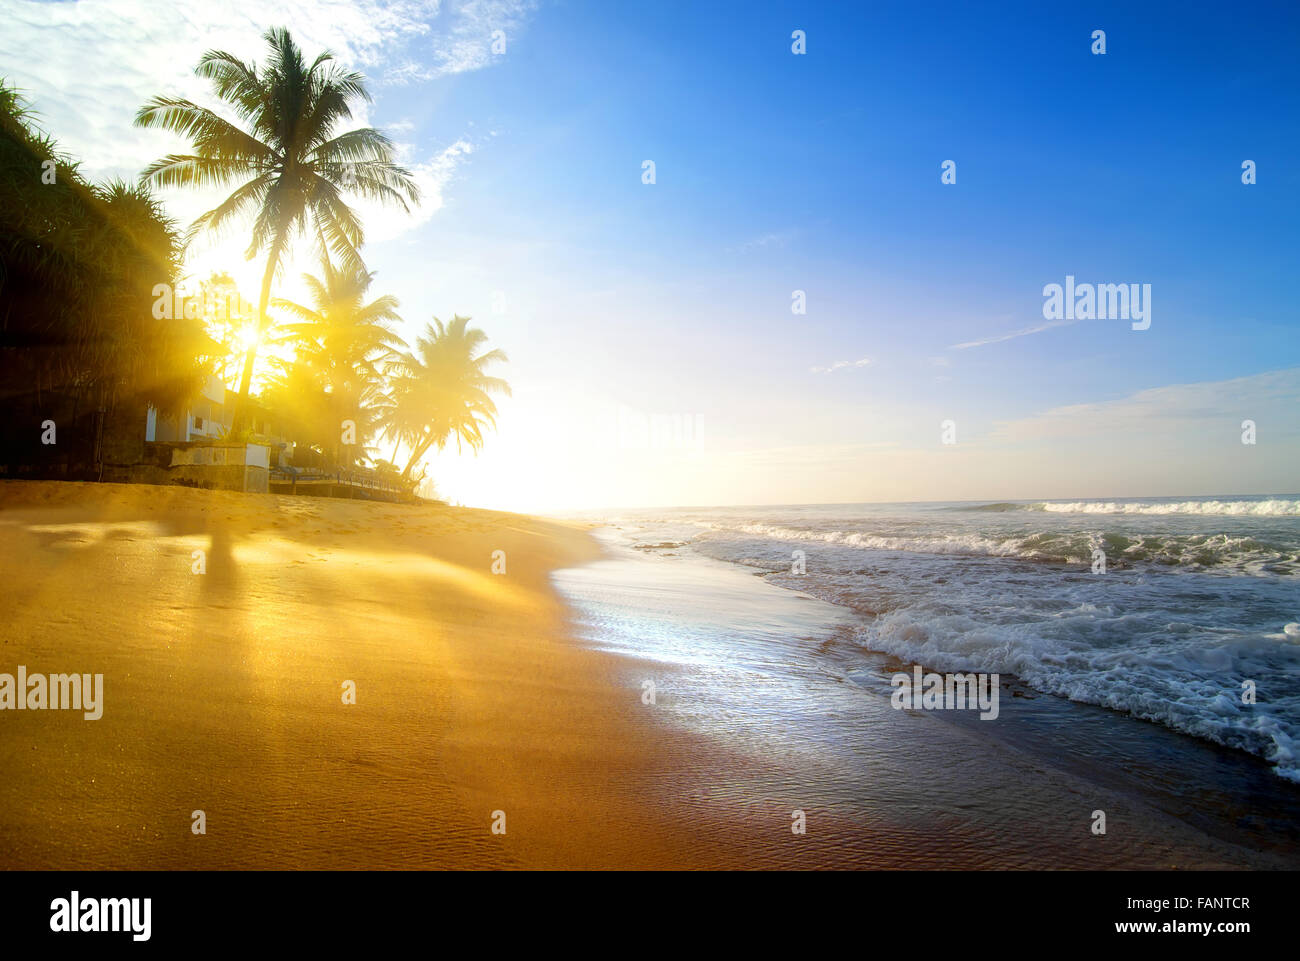 Palmiers sur la plage de sable près de l'océan au lever du soleil Banque D'Images